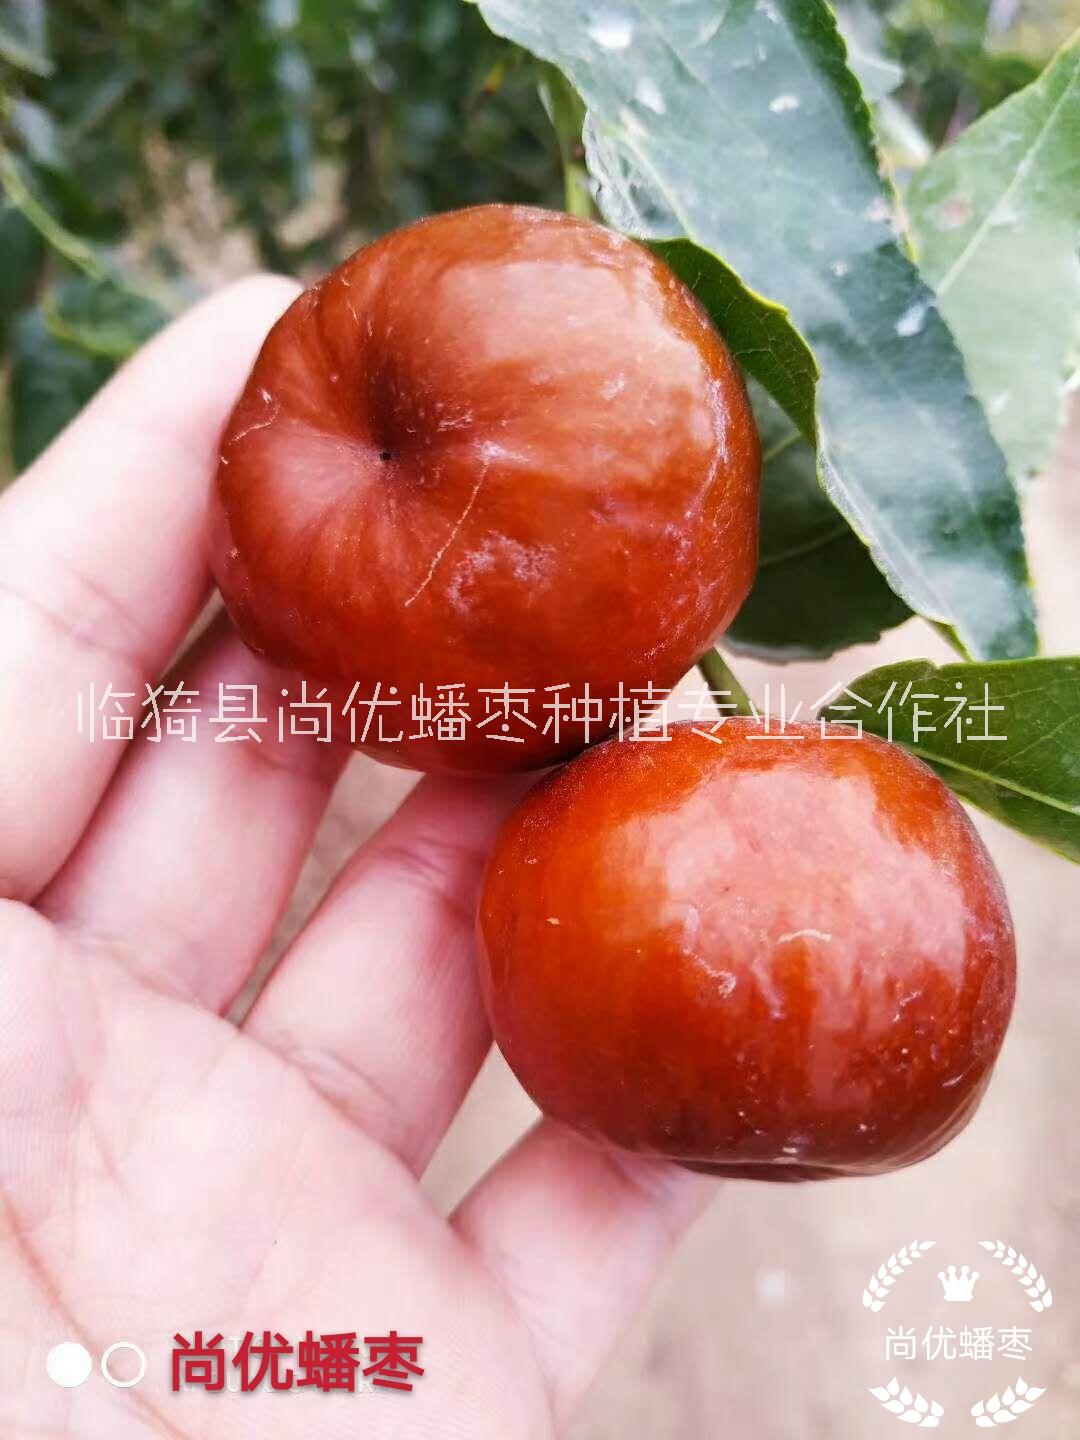 临猗县尚优蟠枣种植合作社是一家专业发展蟠枣种植的合作社